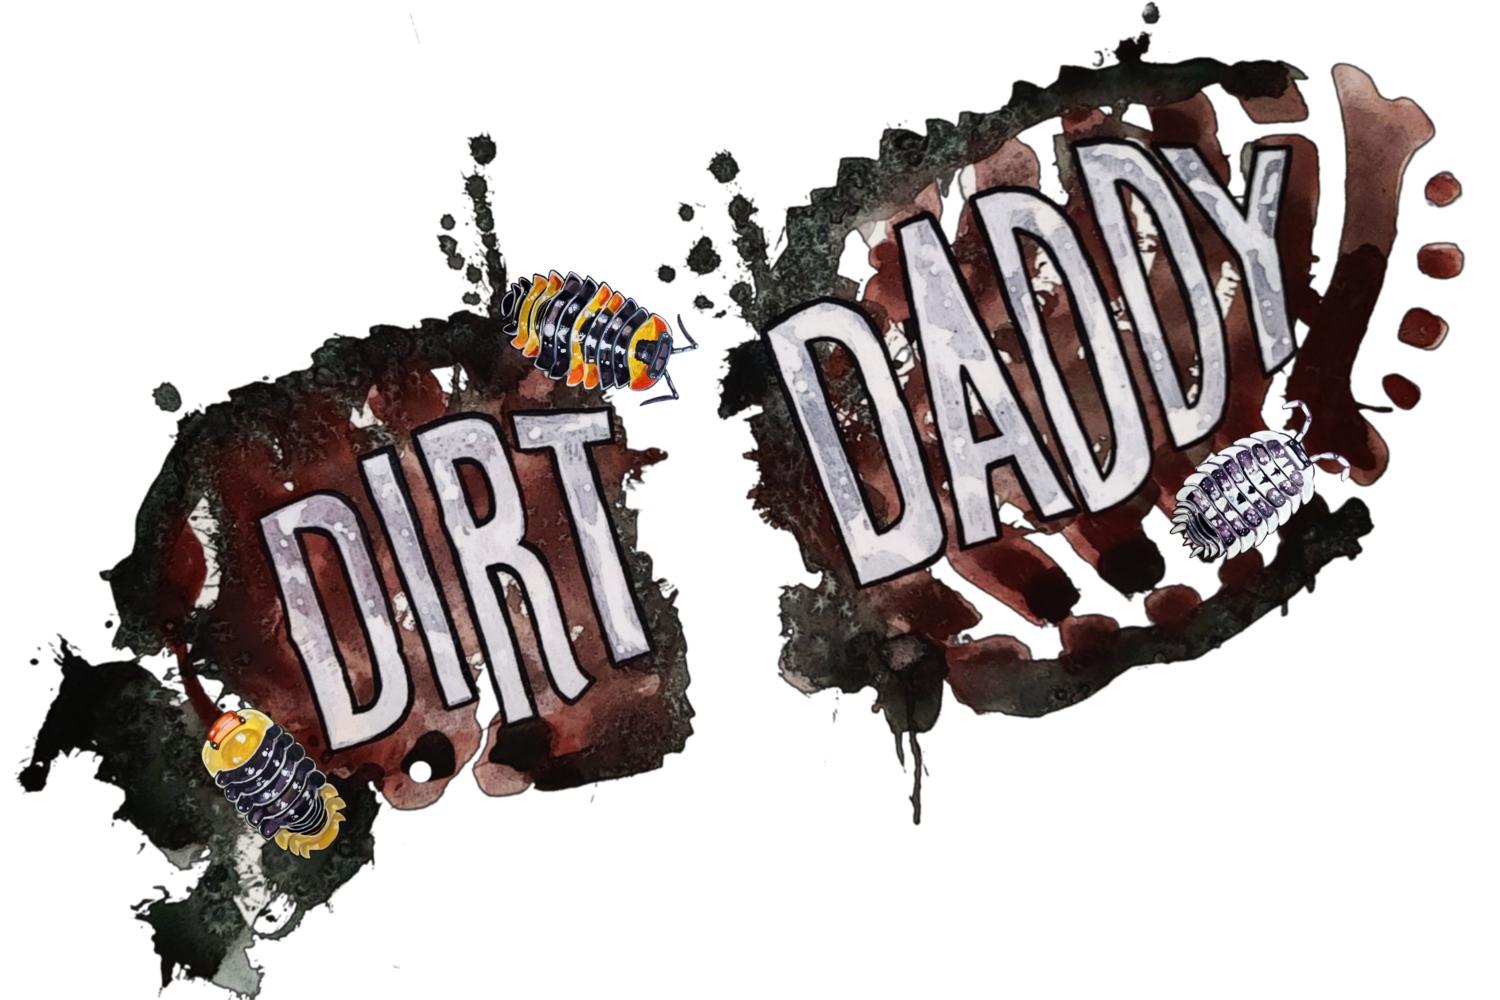 Dirt Daddy LLC